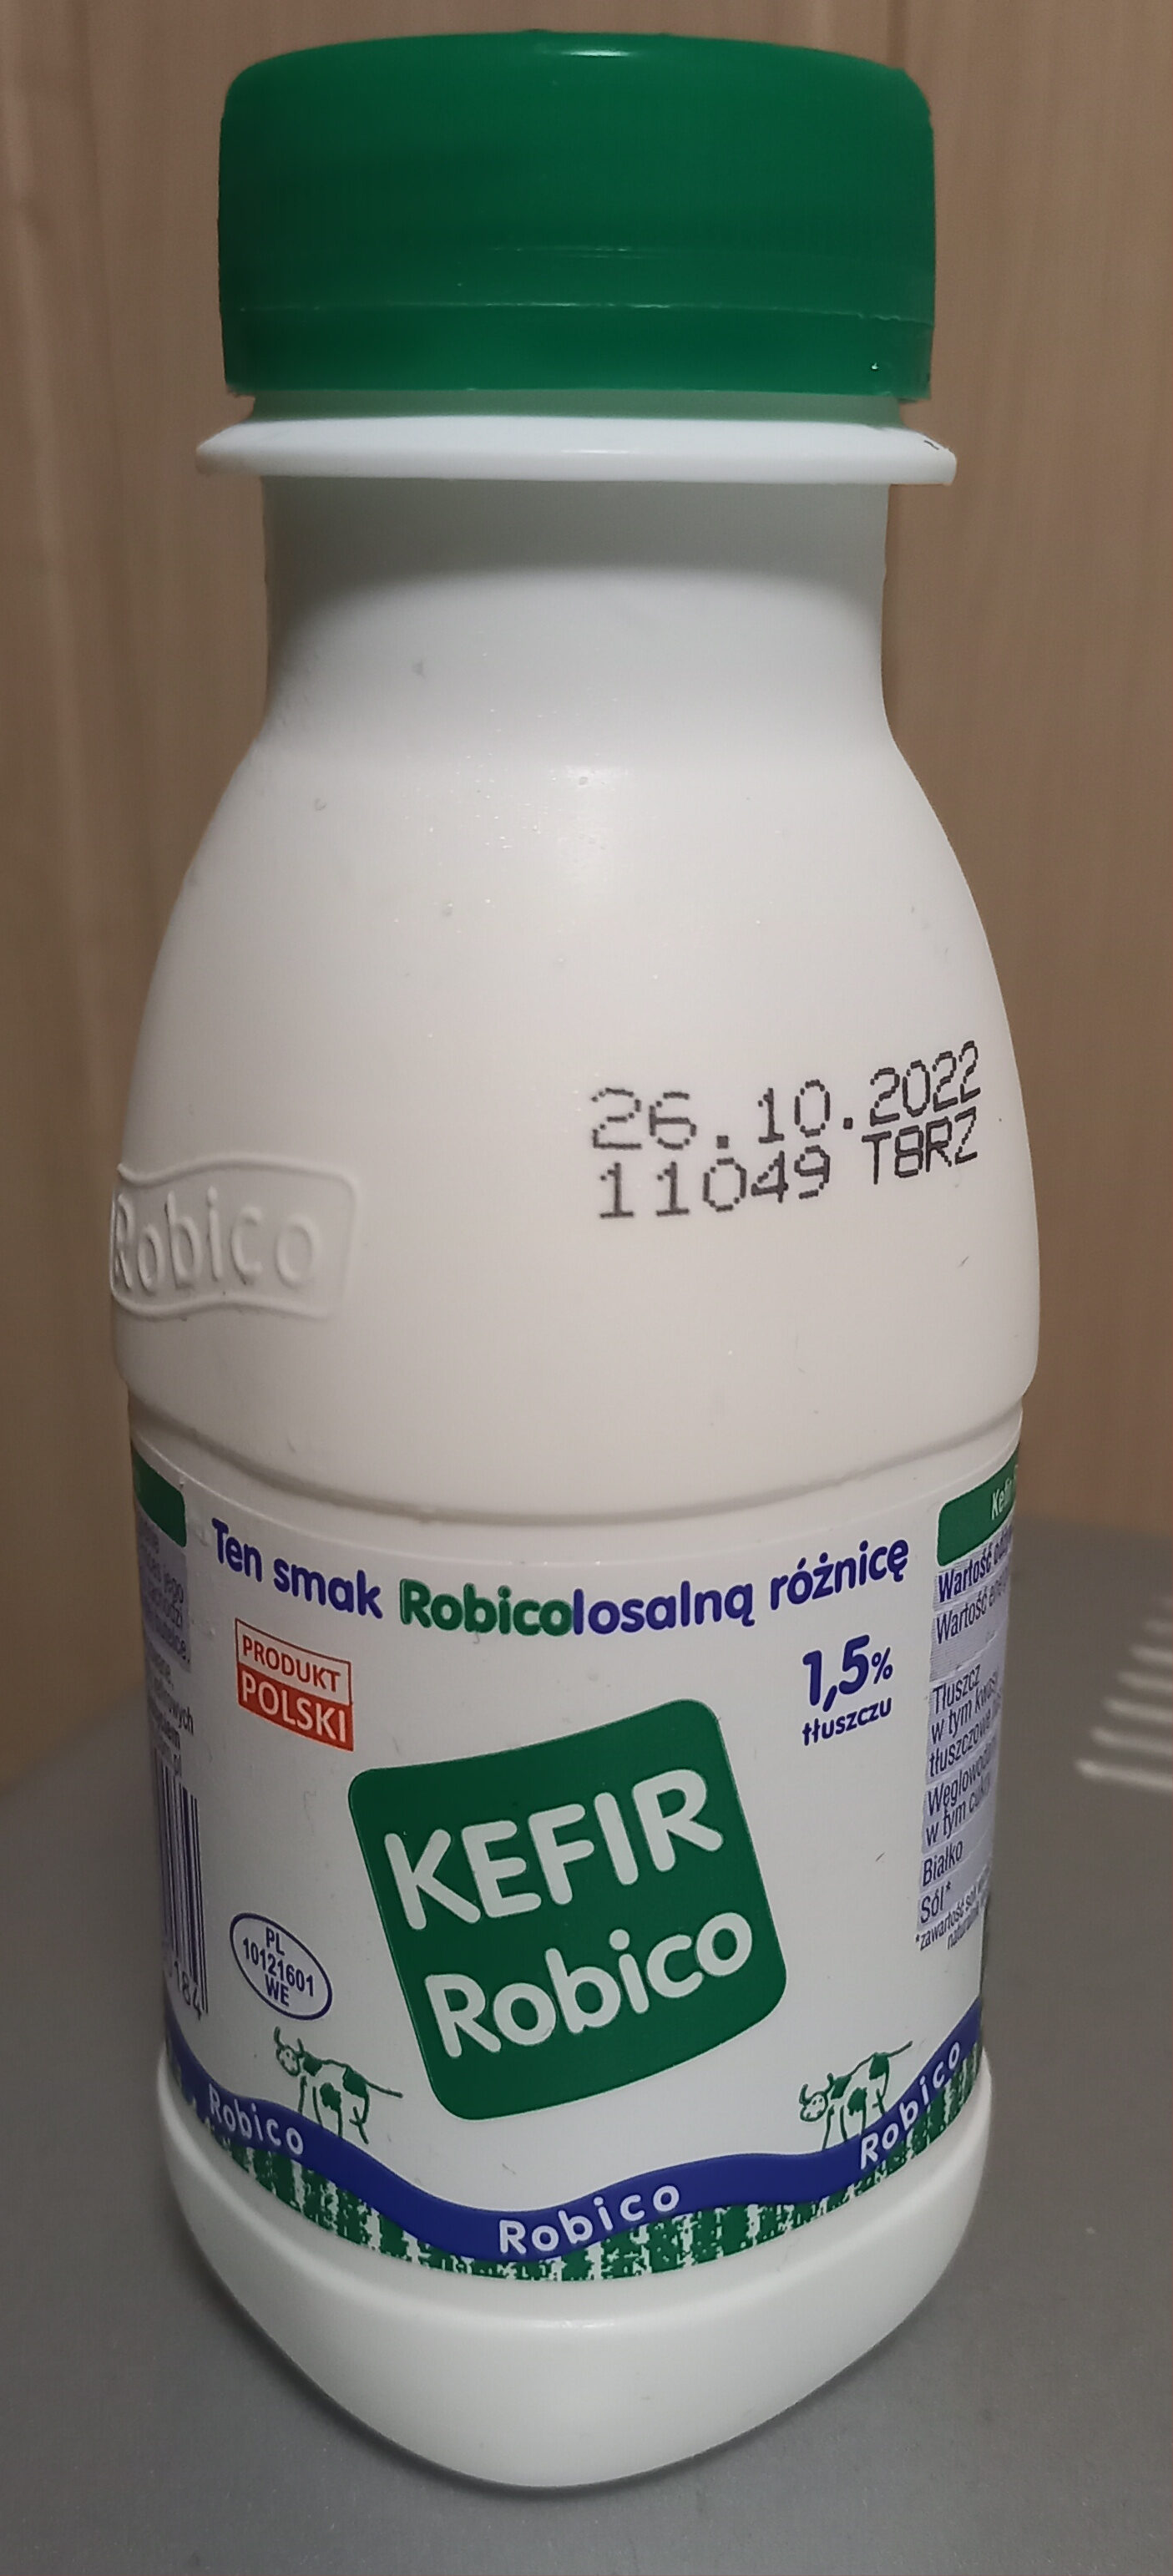 KEFIR Robico - Produkt